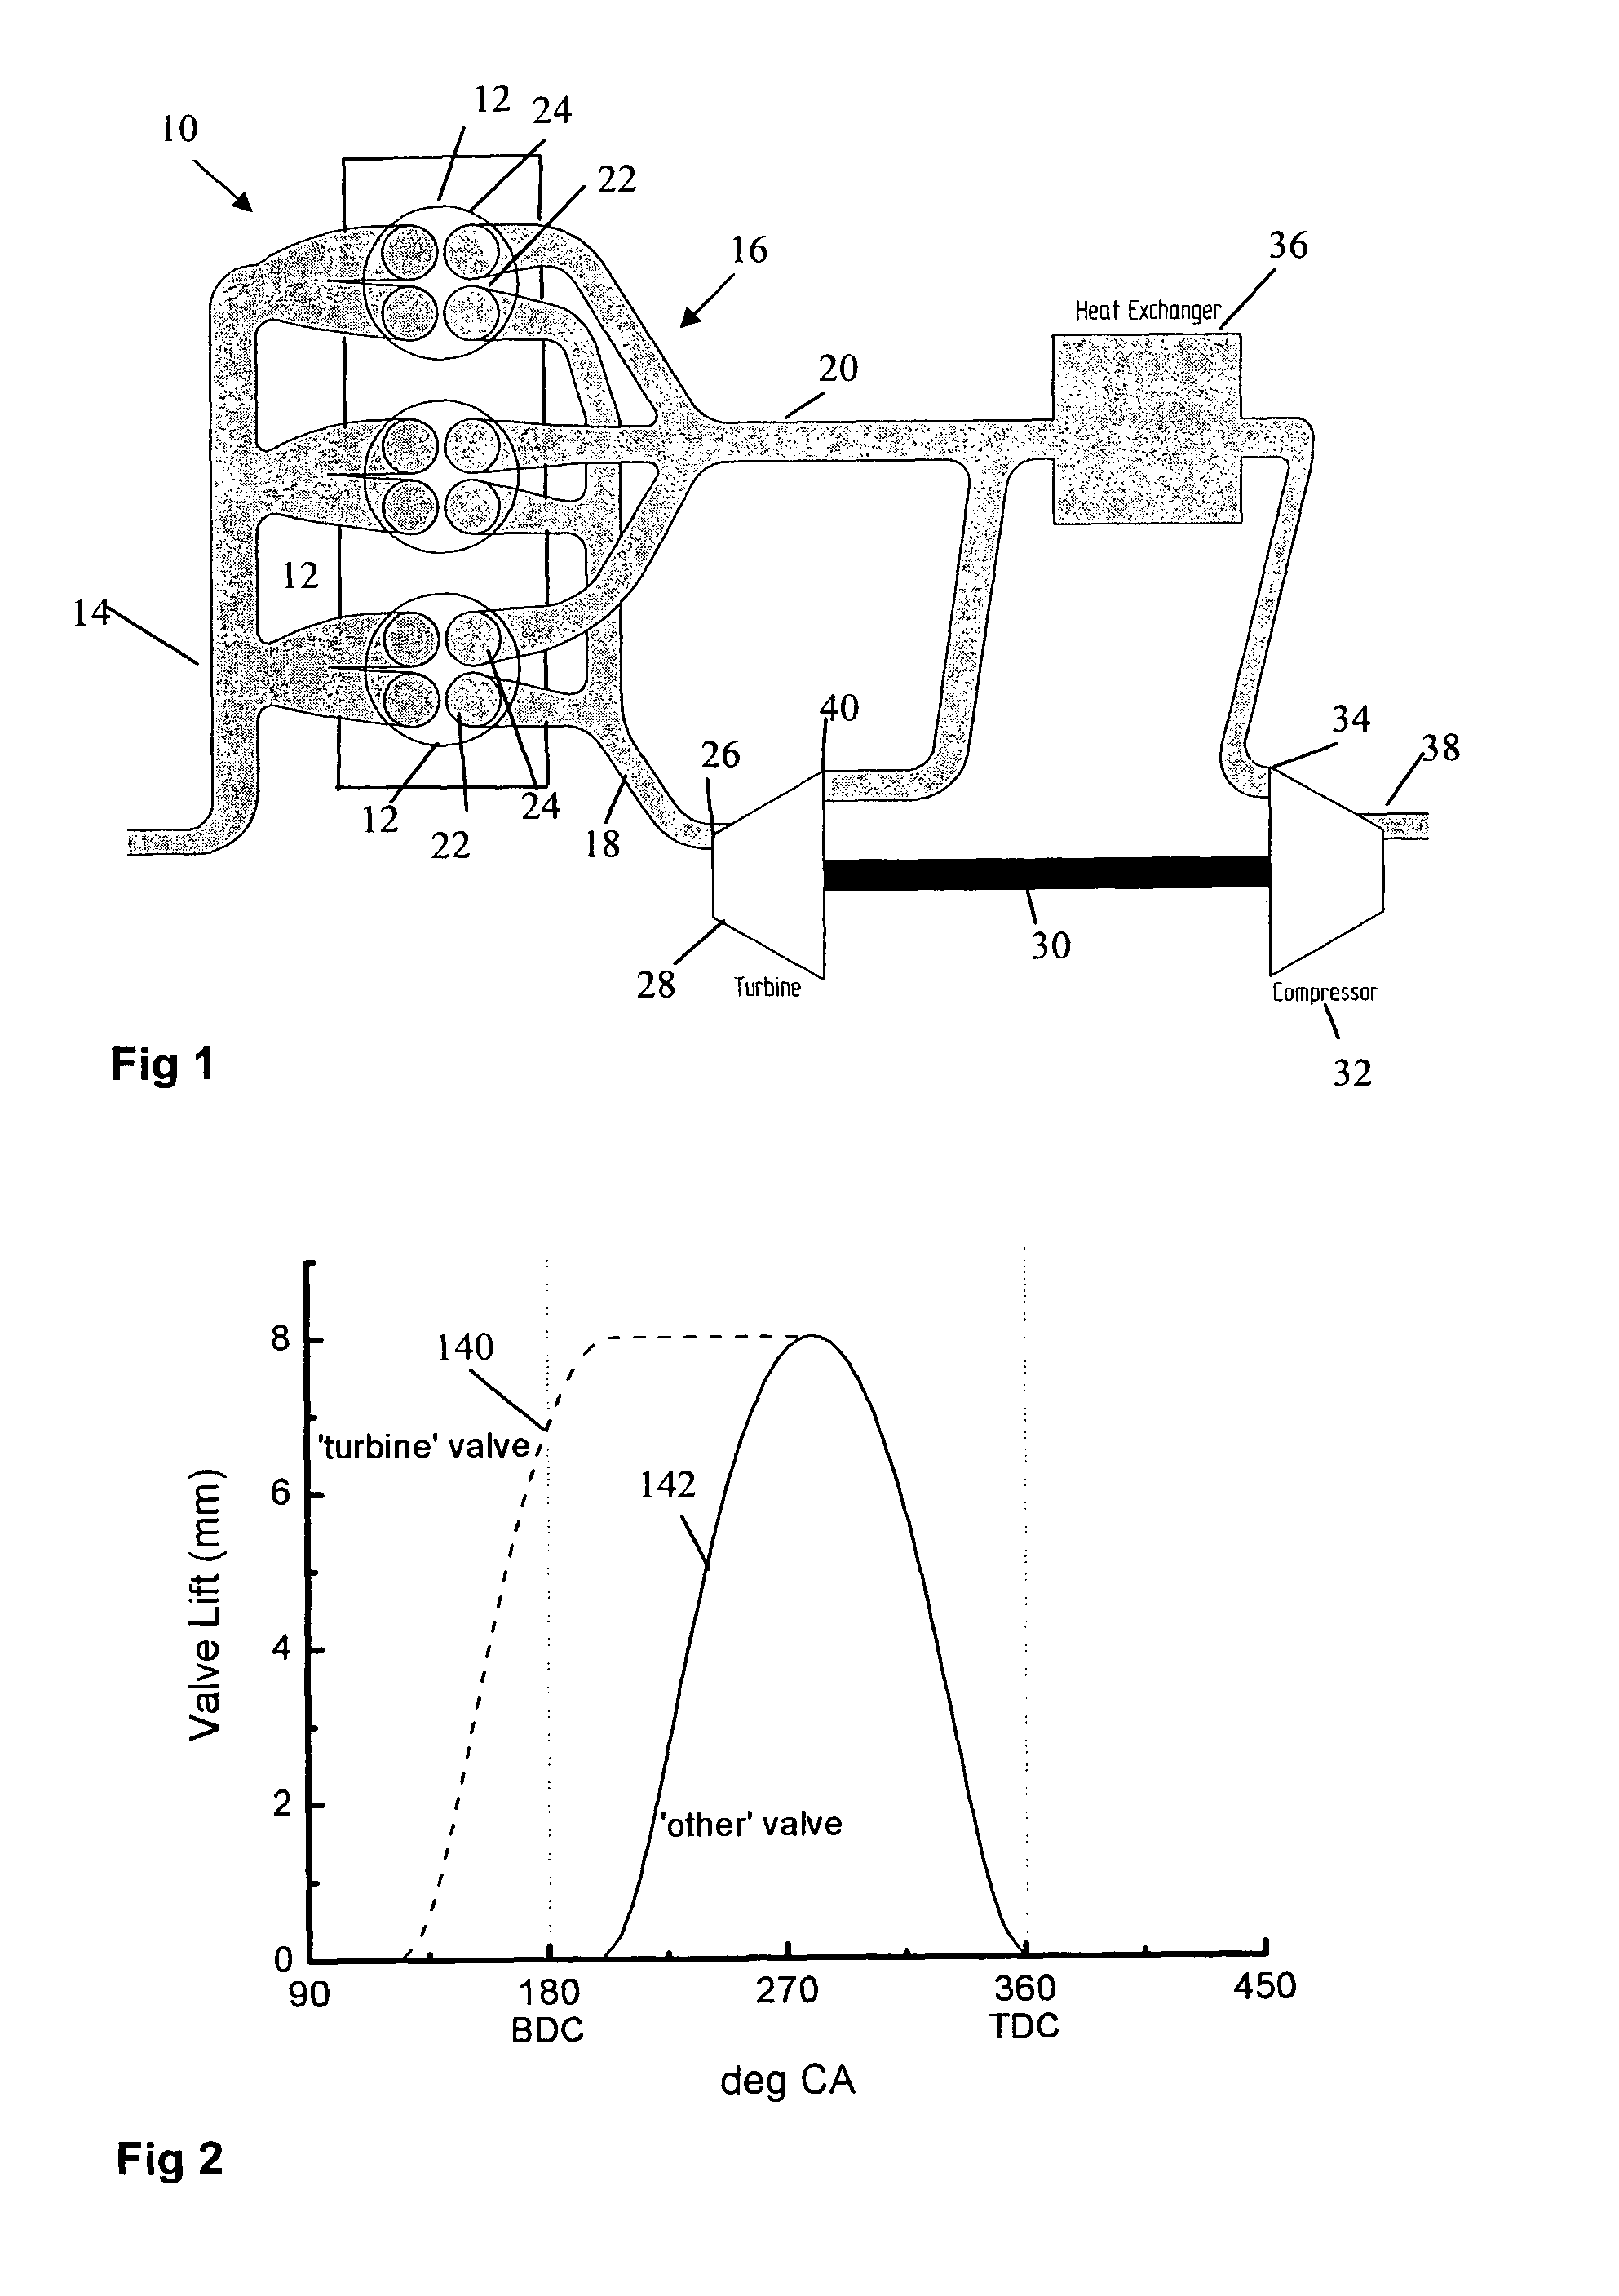 Exhaust arrangement for an internal combustion engine